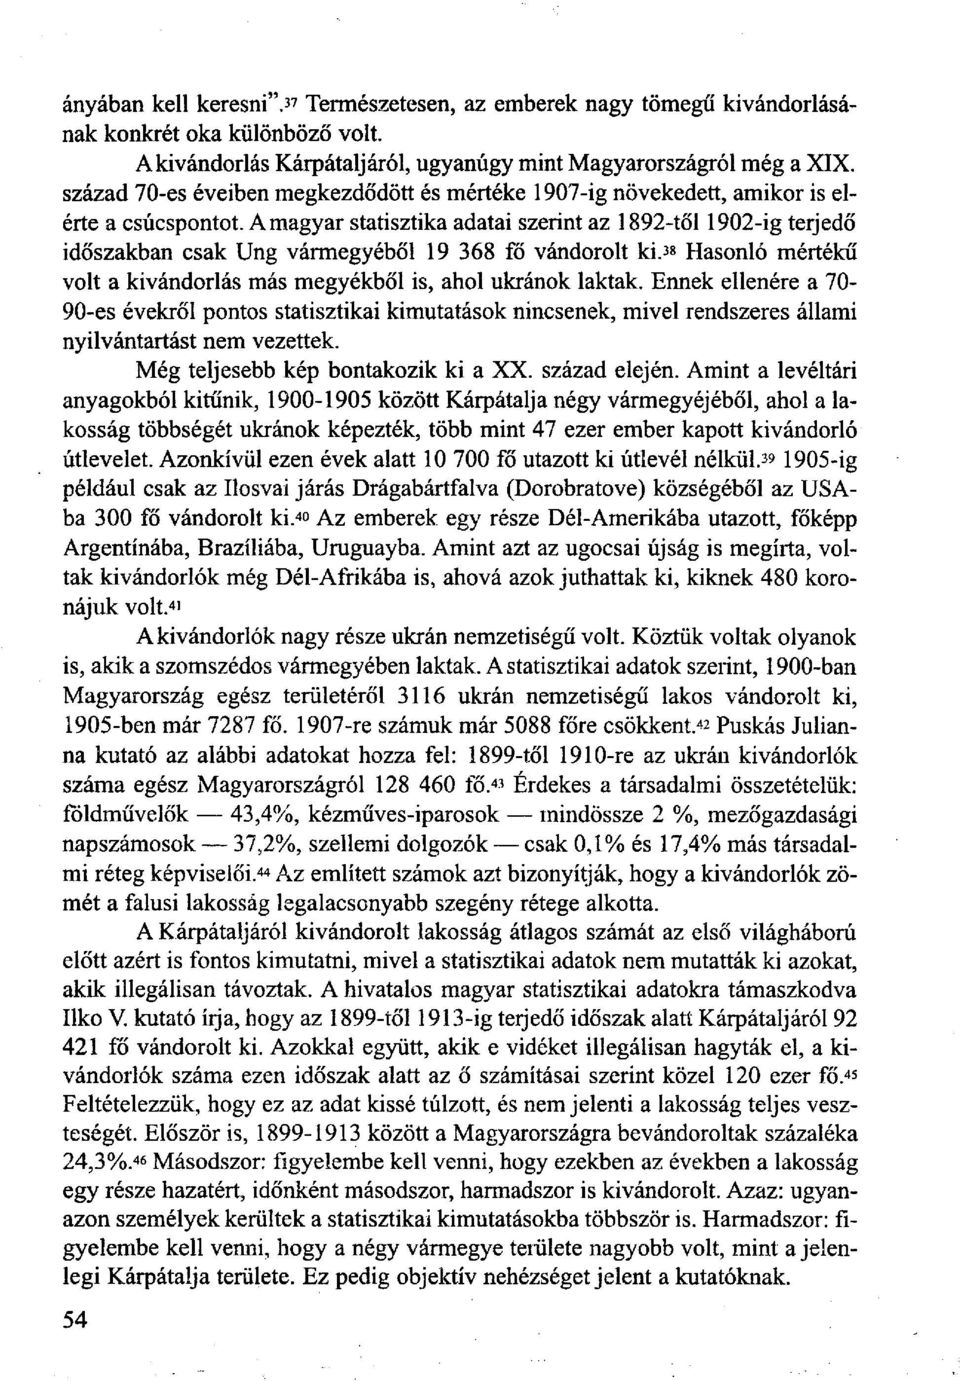 A magyar statisztika adatai szerint az 1892-től 1902-ig terjedő időszakban csak Ung vármegyéből 19 368 fő vándorolt ki. 3 «Hasonló mértékű volt a kivándorlás más megyékből is, ahol ukránok laktak.